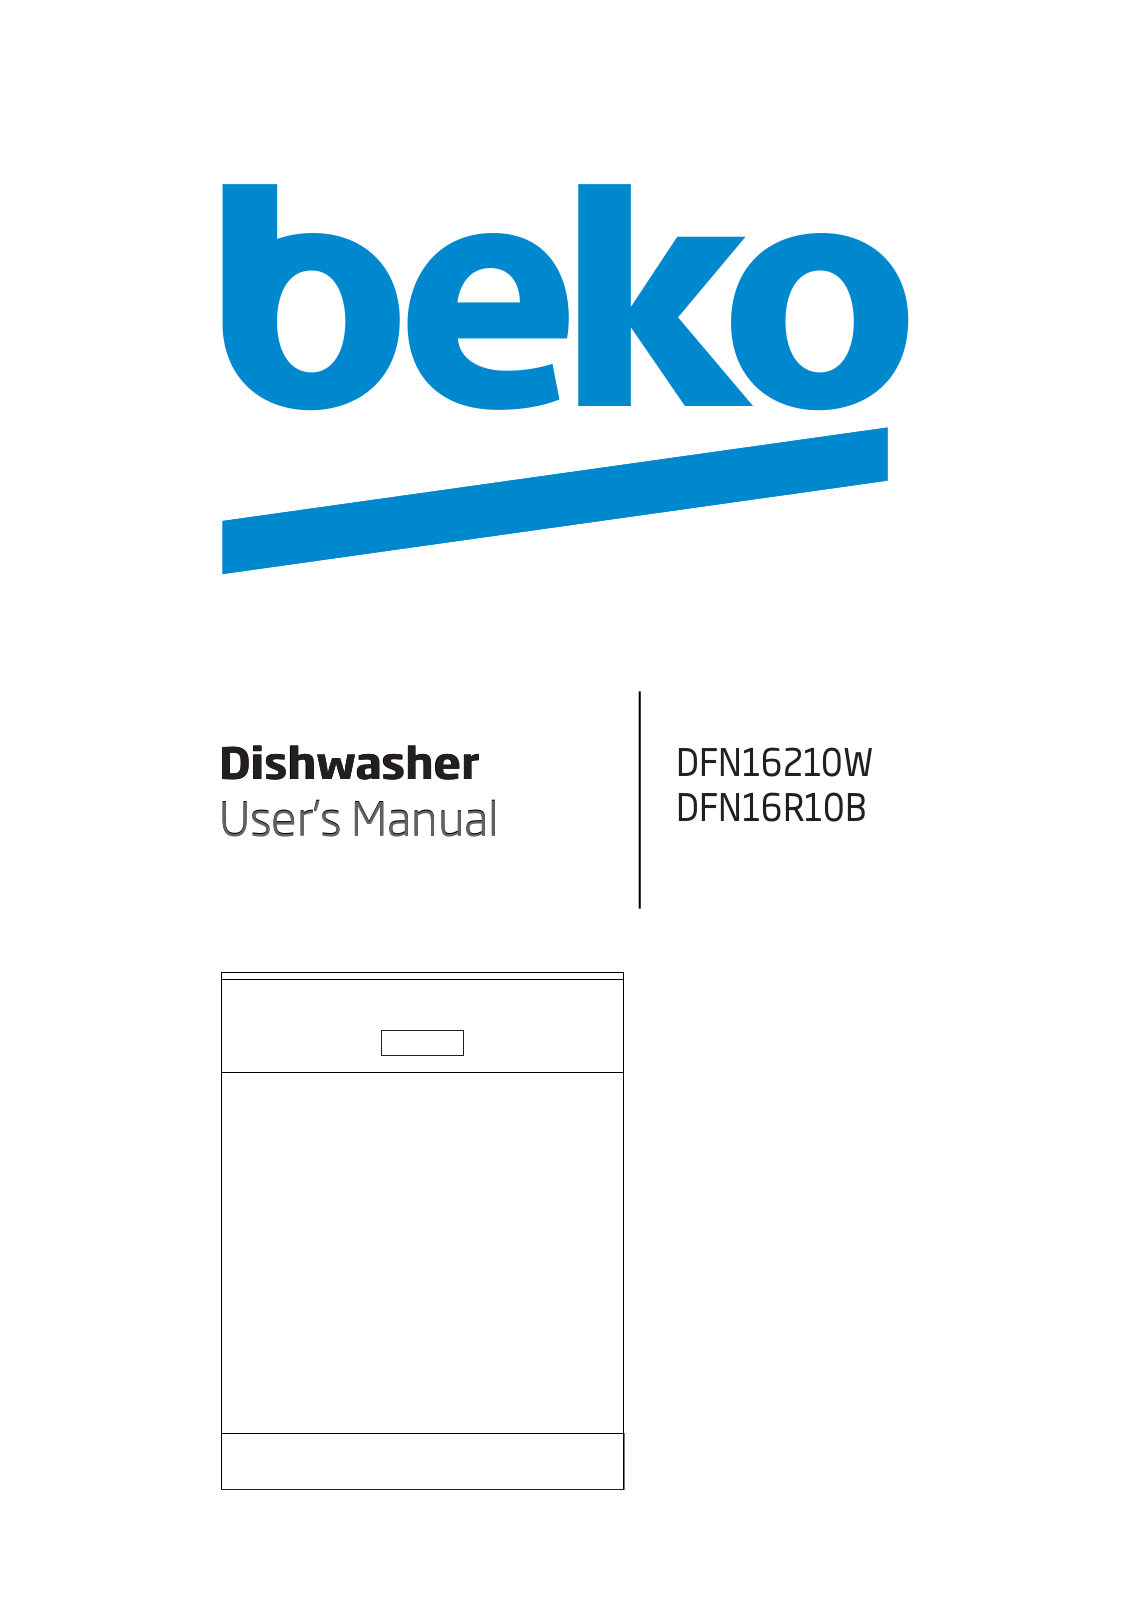 Beko DFN16R10B, DFN16210W User Manual